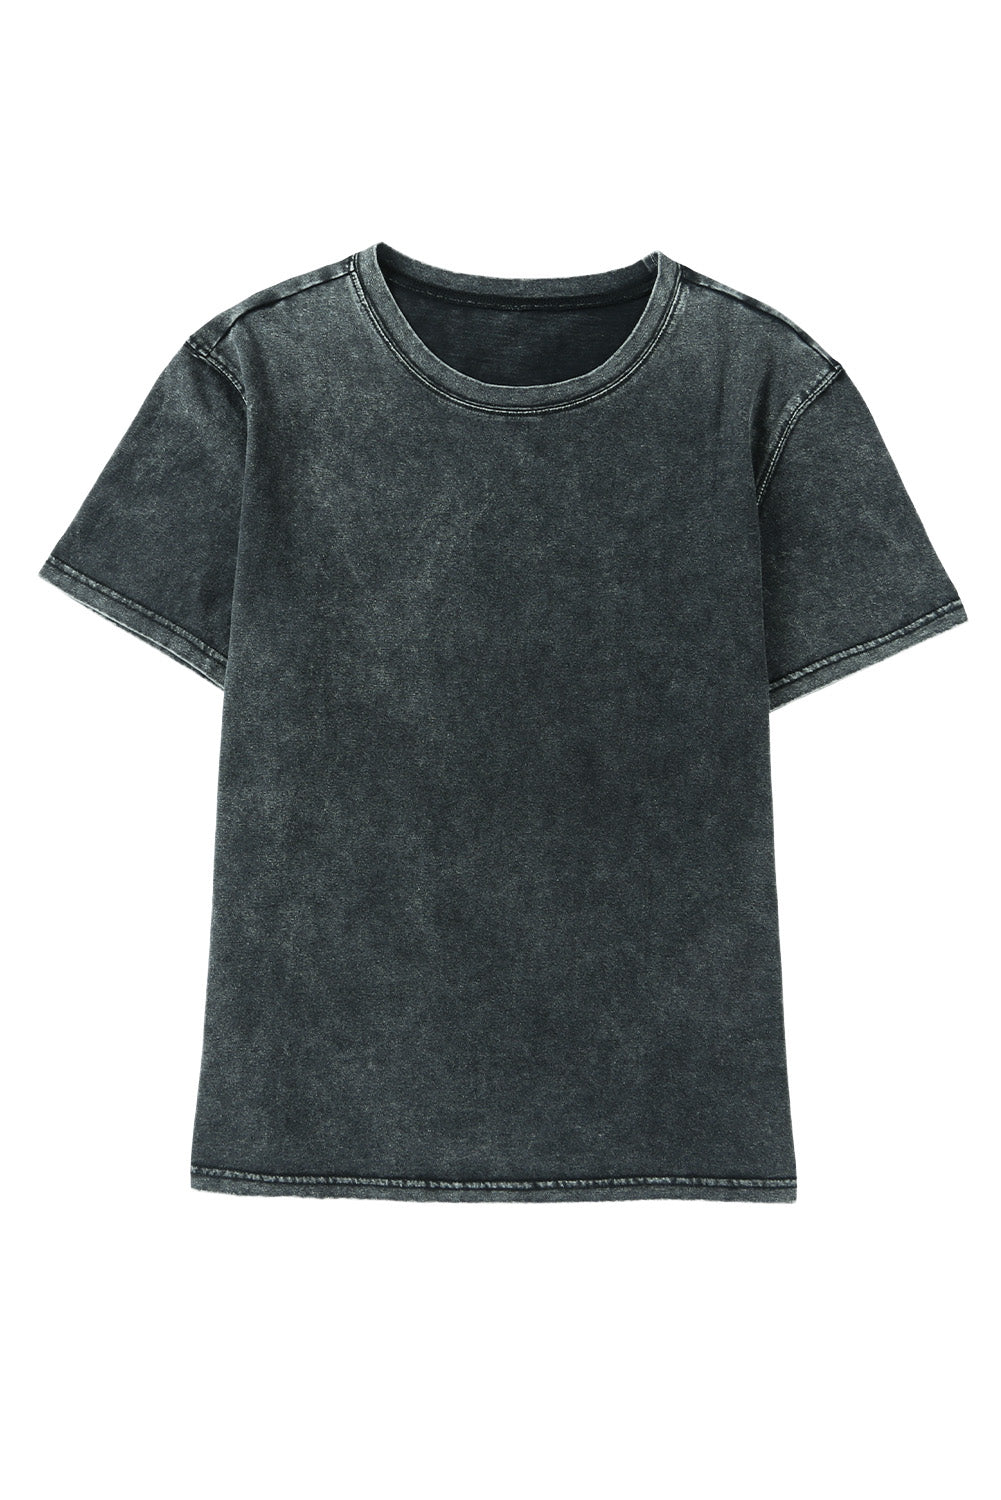 T-shirt décontracté à manches courtes noir délavé minéral